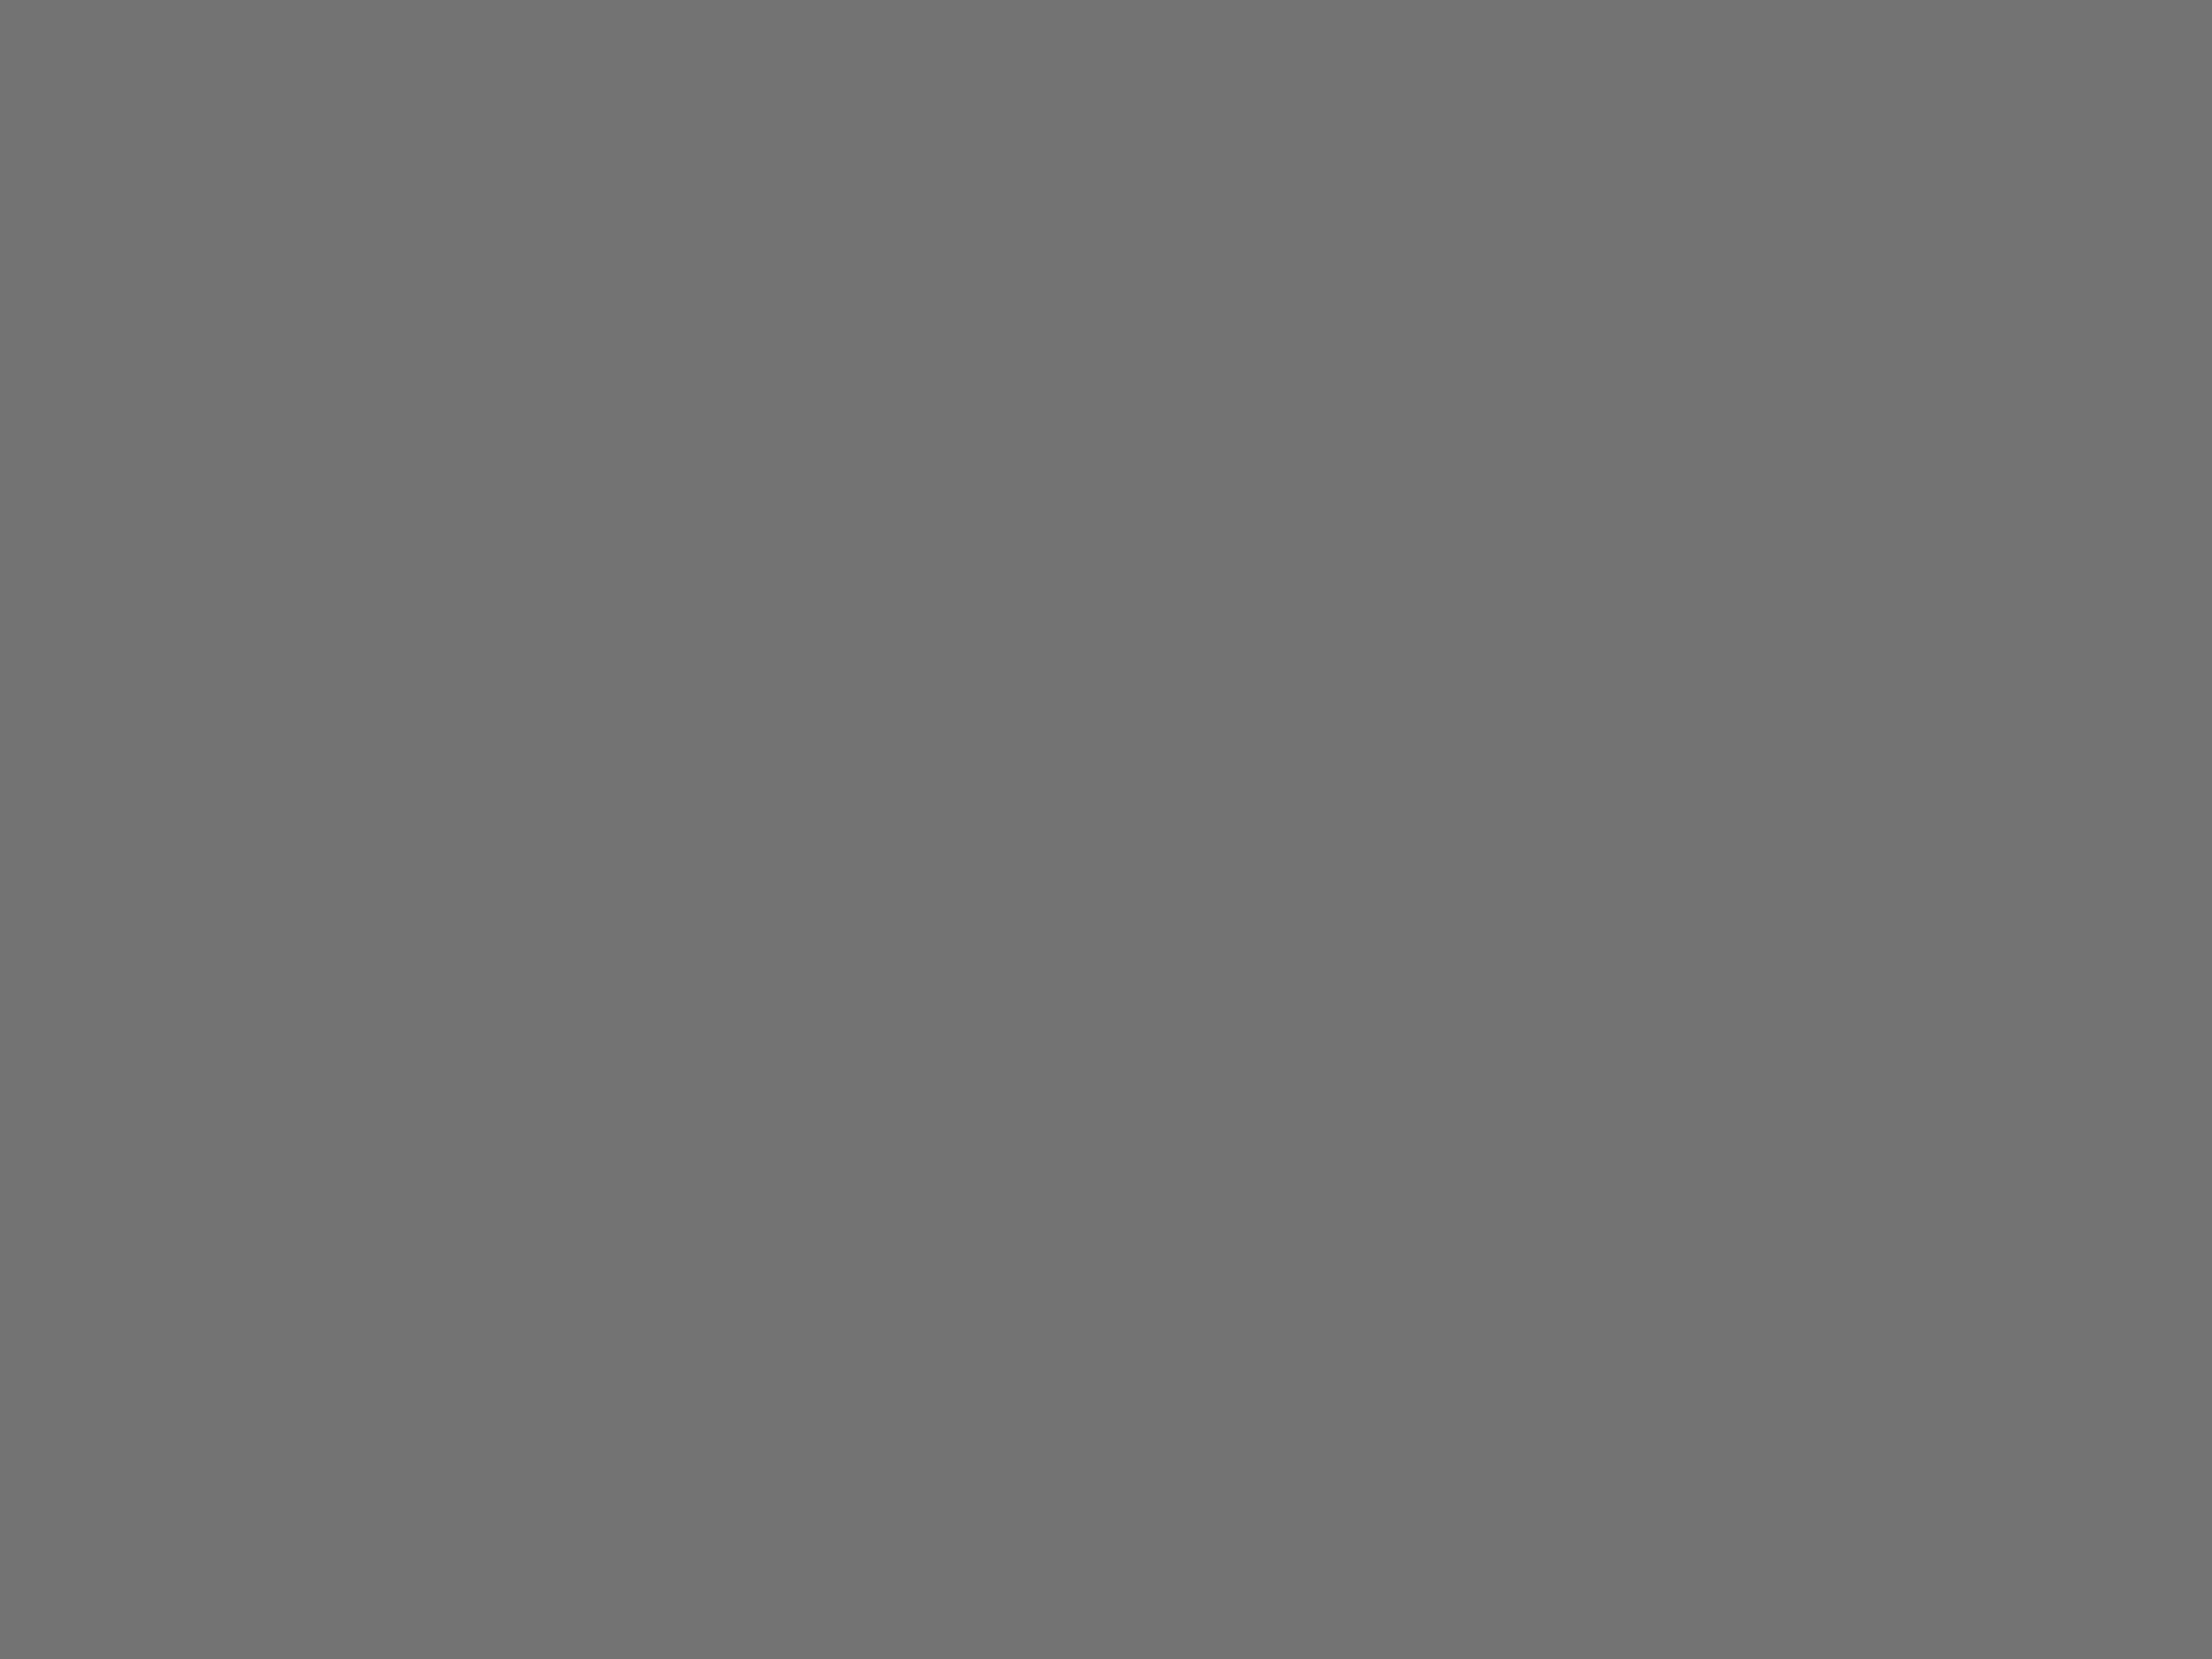 Актрисы Вера Алентова (справа) в роли Кати и Ирина Муравьева в роли Люды в художественном фильме Владимира Меньшова «Москва слезам не верит». Фотография: фотохроника ТАСС